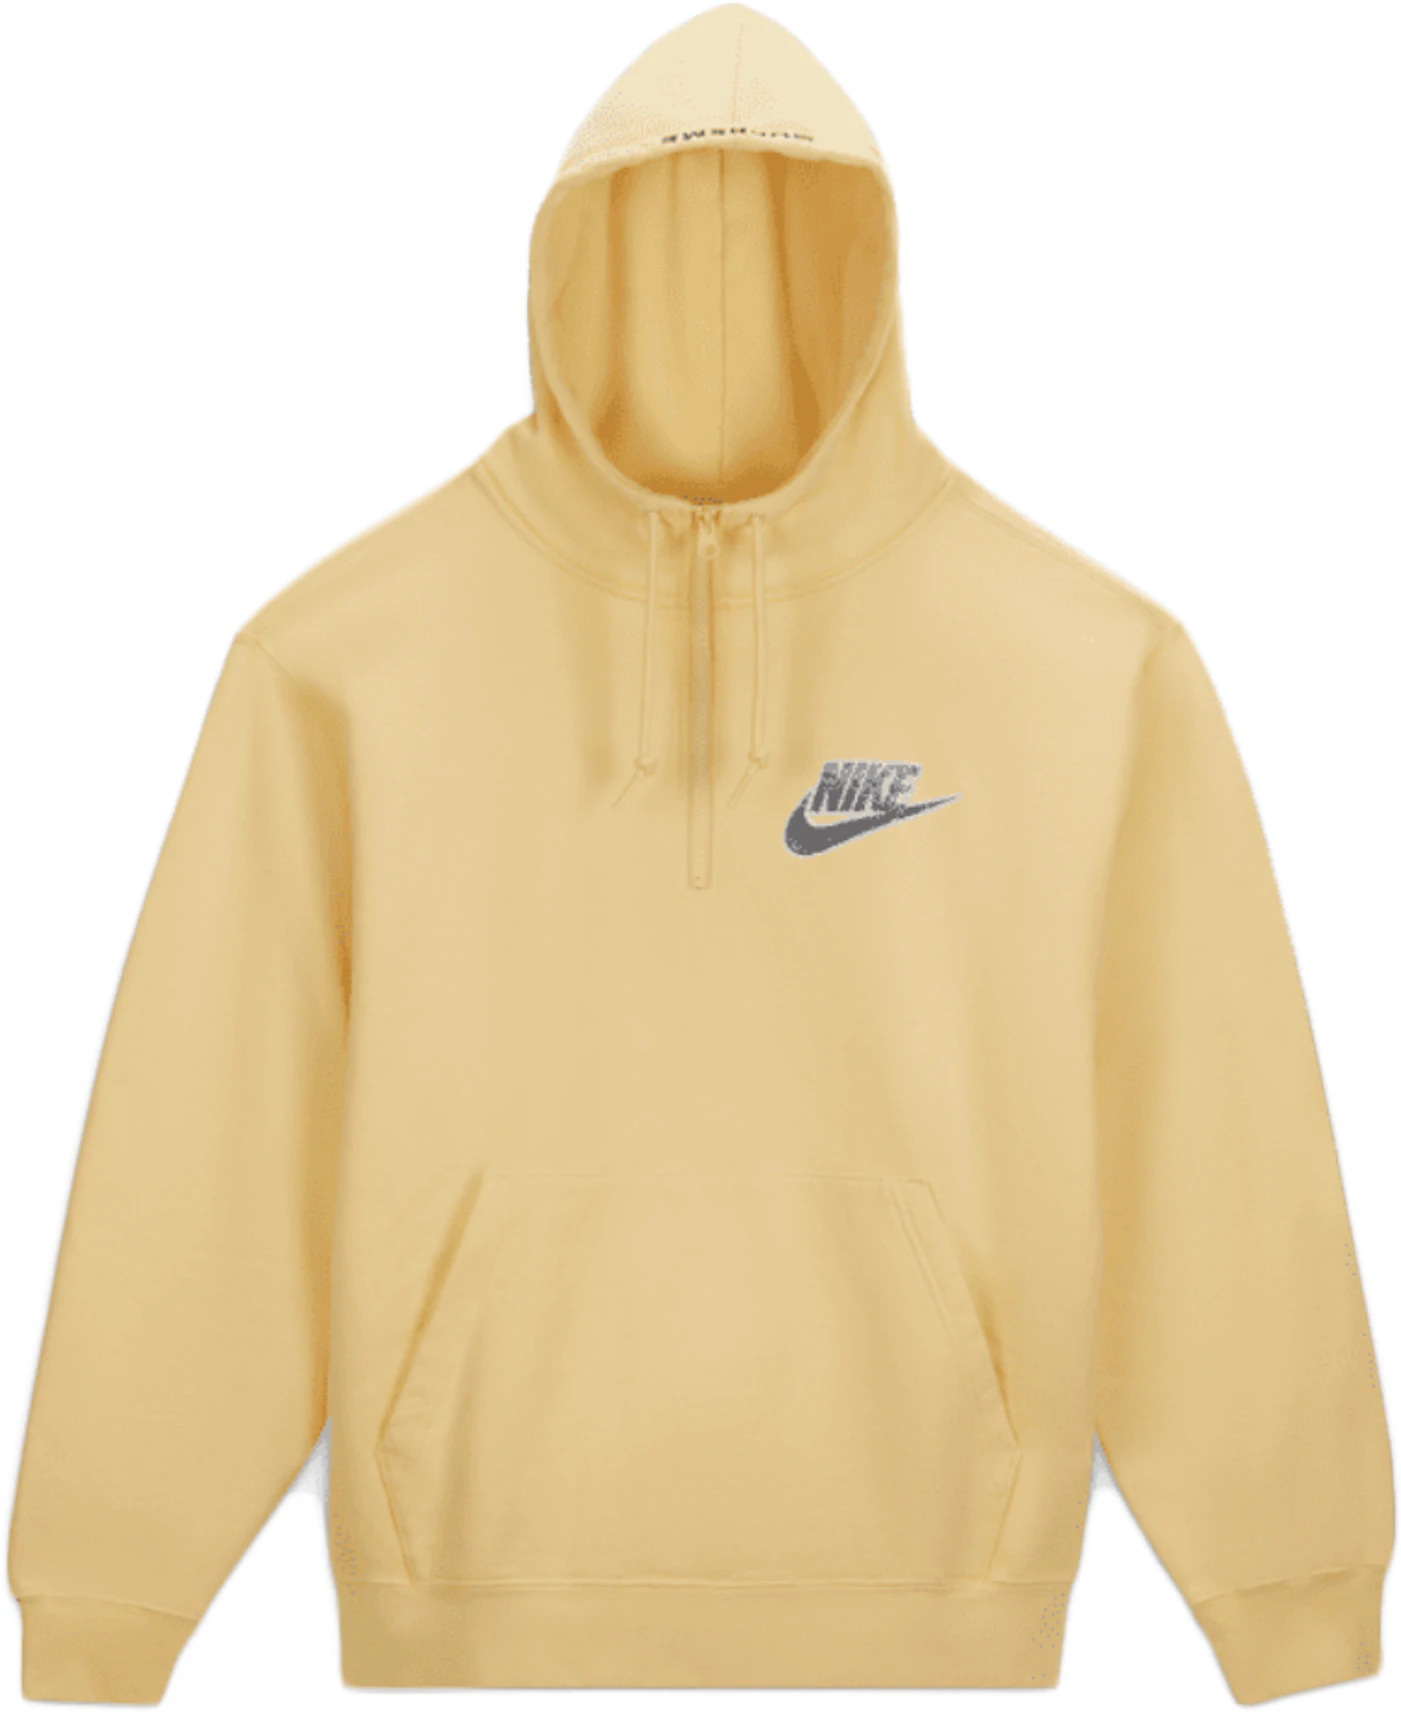 Entrada Permanecer de pié de madera Supreme Nike Half Zip Hooded Sweatshirt Pale Yellow - SS21 - ES